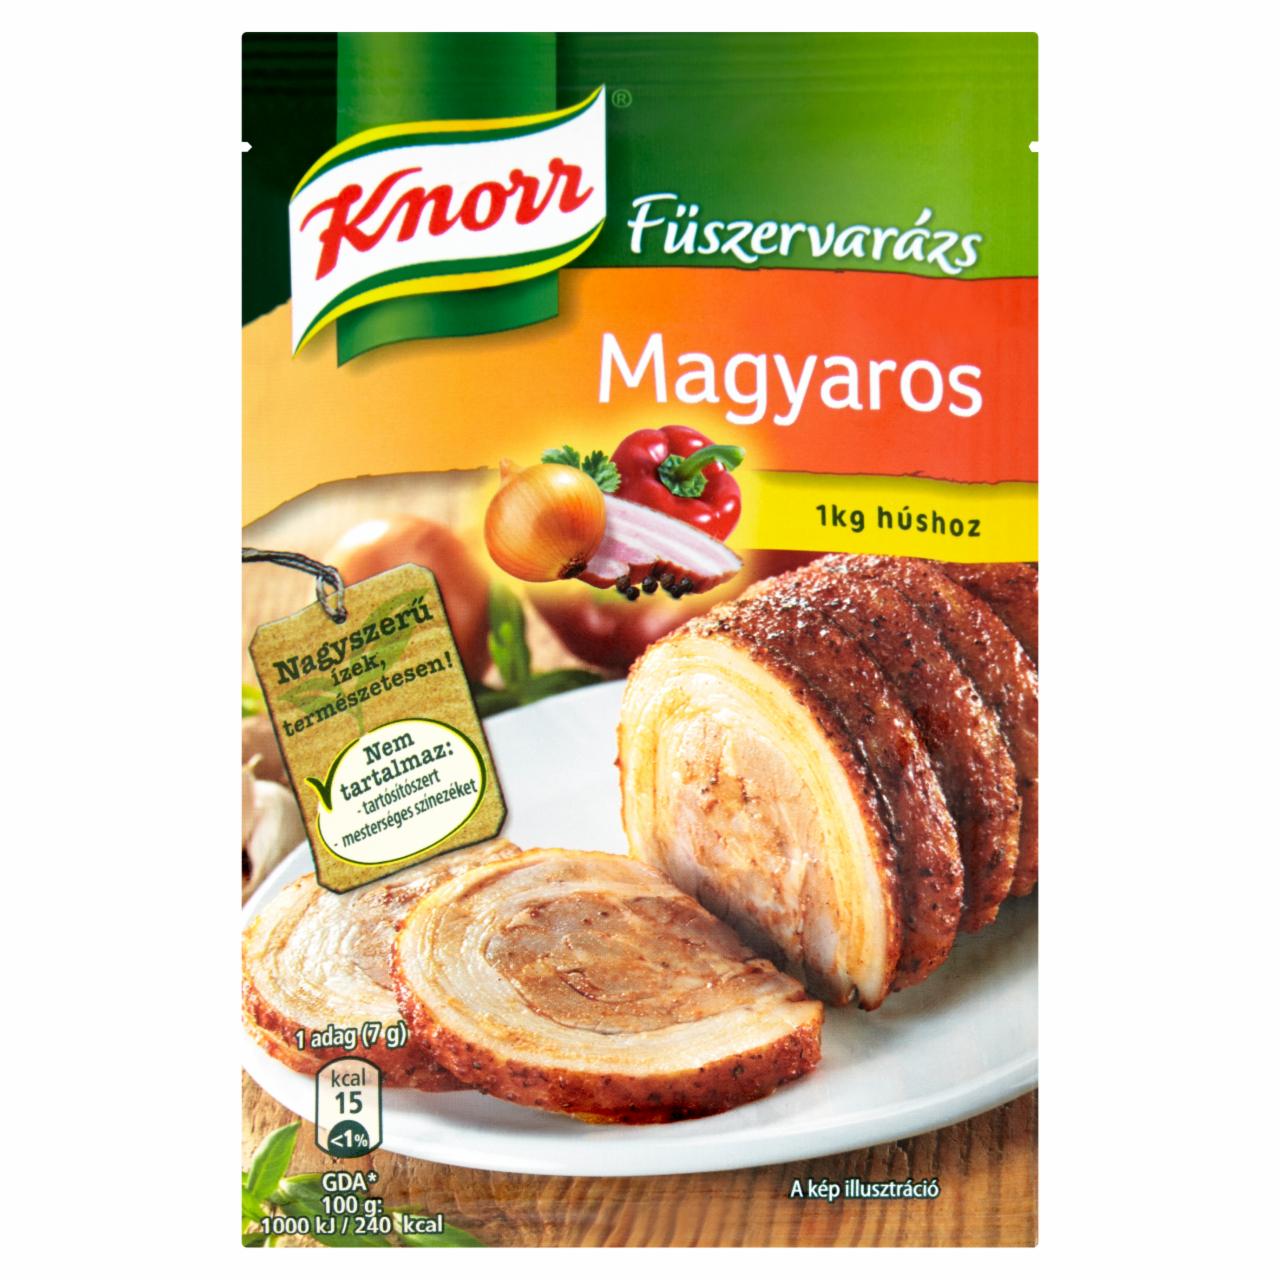 Képek - Knorr Fűszervarázs magyaros fűszerkeverék 38 g